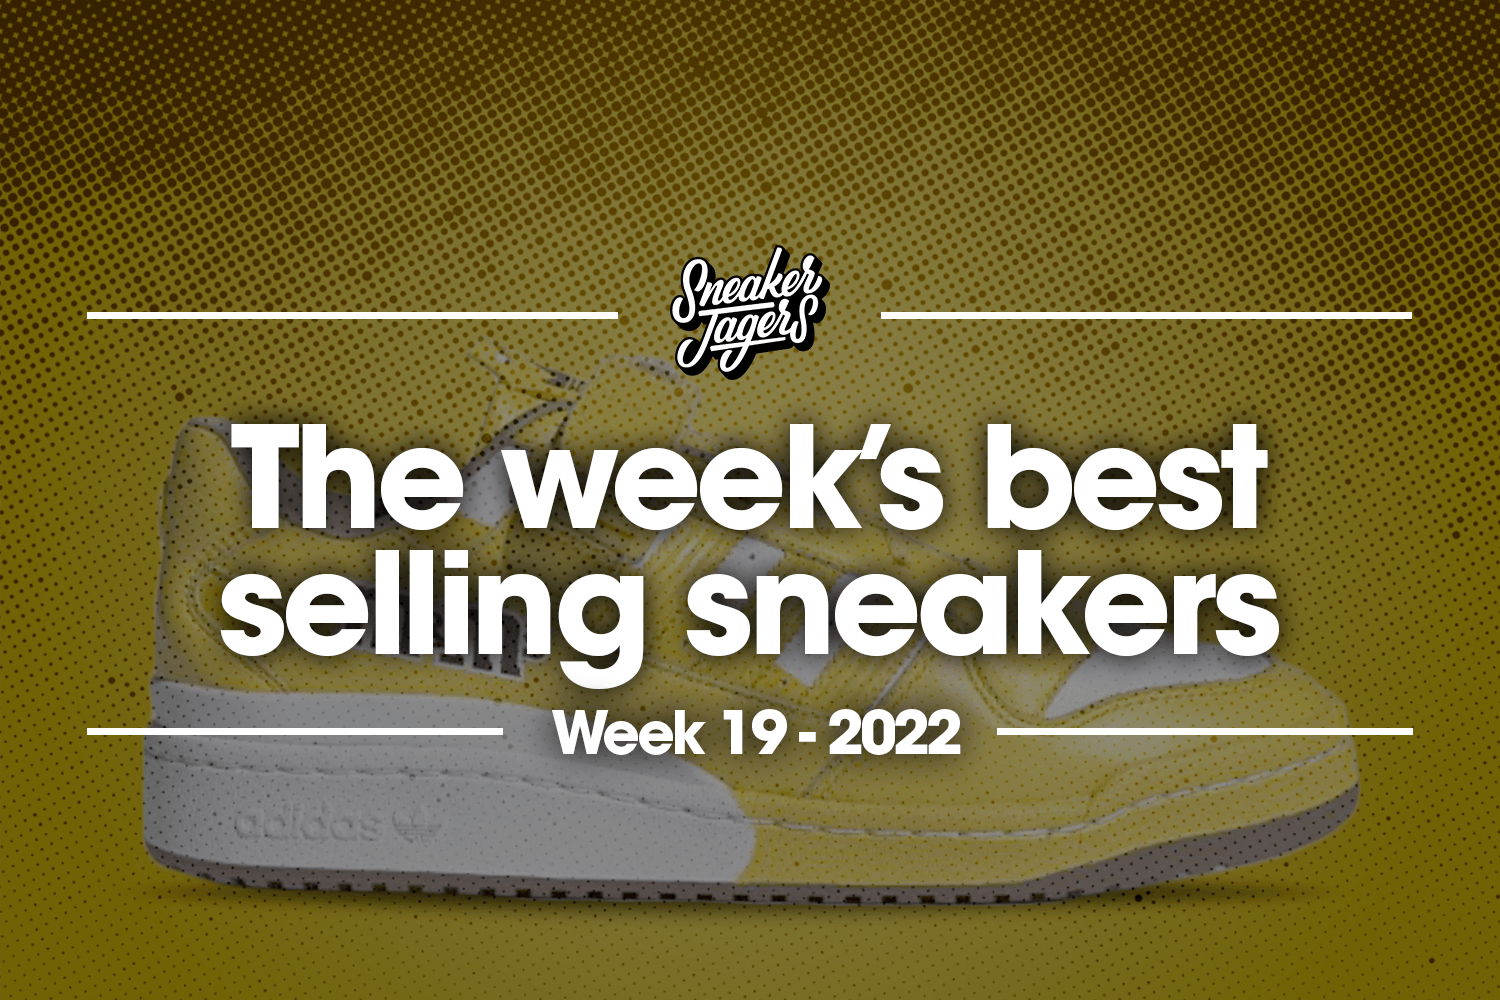 De 5 bestverkochte sneakers van week 19